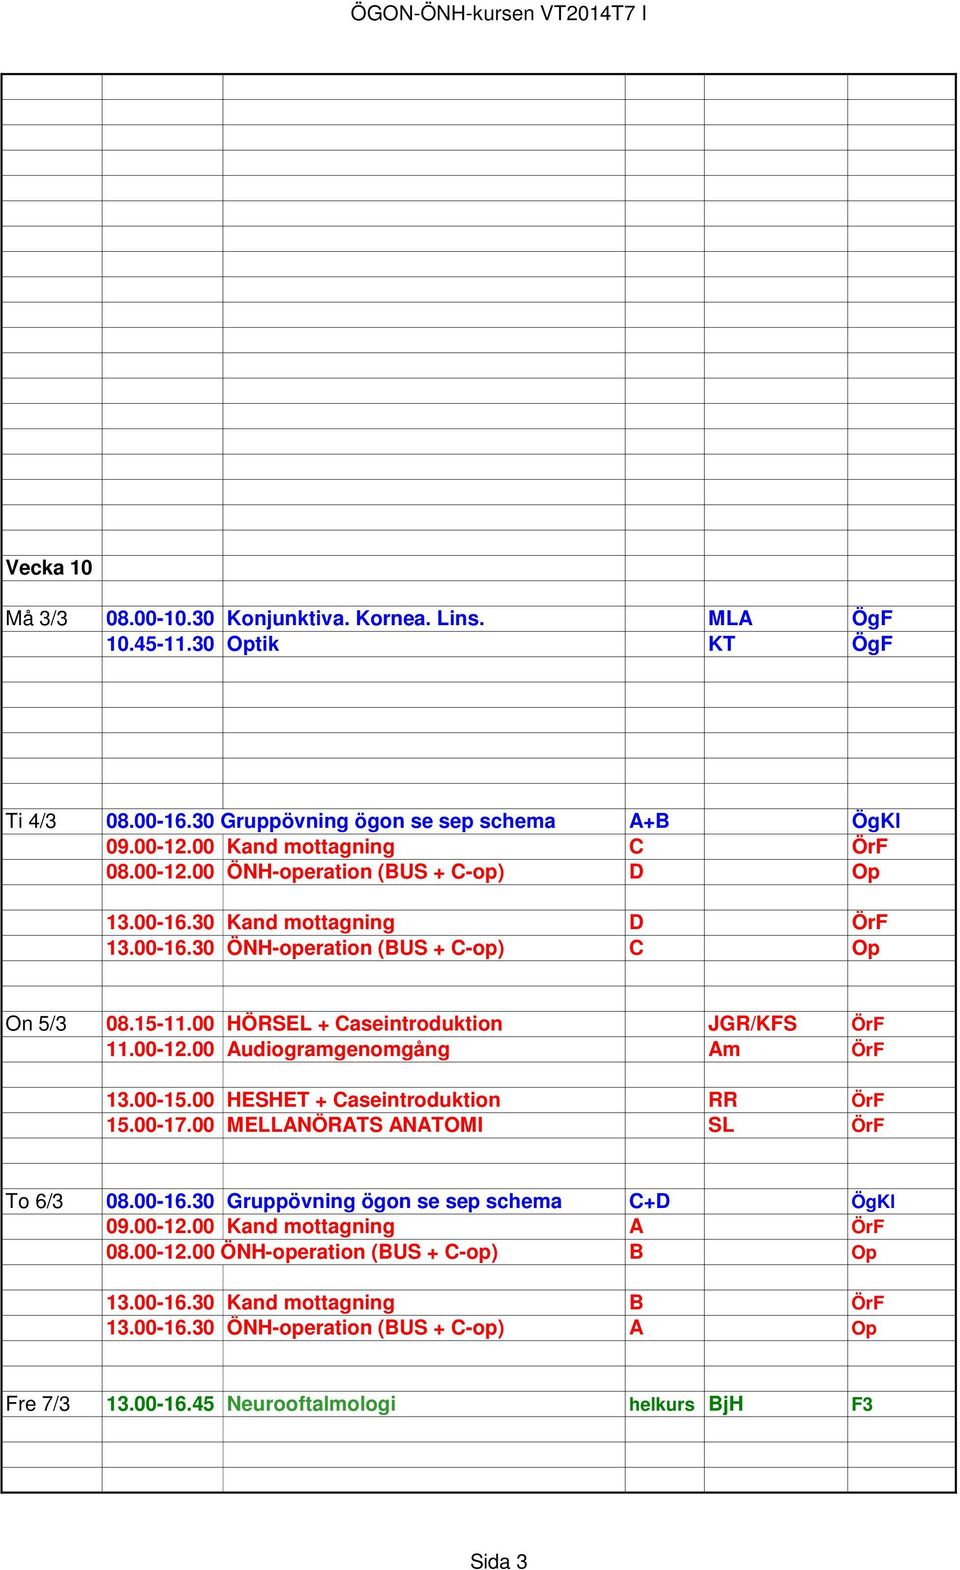 00-15.00 HESHET + Caseintroduktion RR ÖrF 15.00-17.00 MELLANÖRATS ANATOMI SL ÖrF To 6/3 08.00-16.30 Gruppövning ögon se sep schema C+D ÖgKl 09.00-12.00 Kand mottagning A ÖrF 08.00-12.00 ÖNH-operation (BUS + C-op) B Op 13.